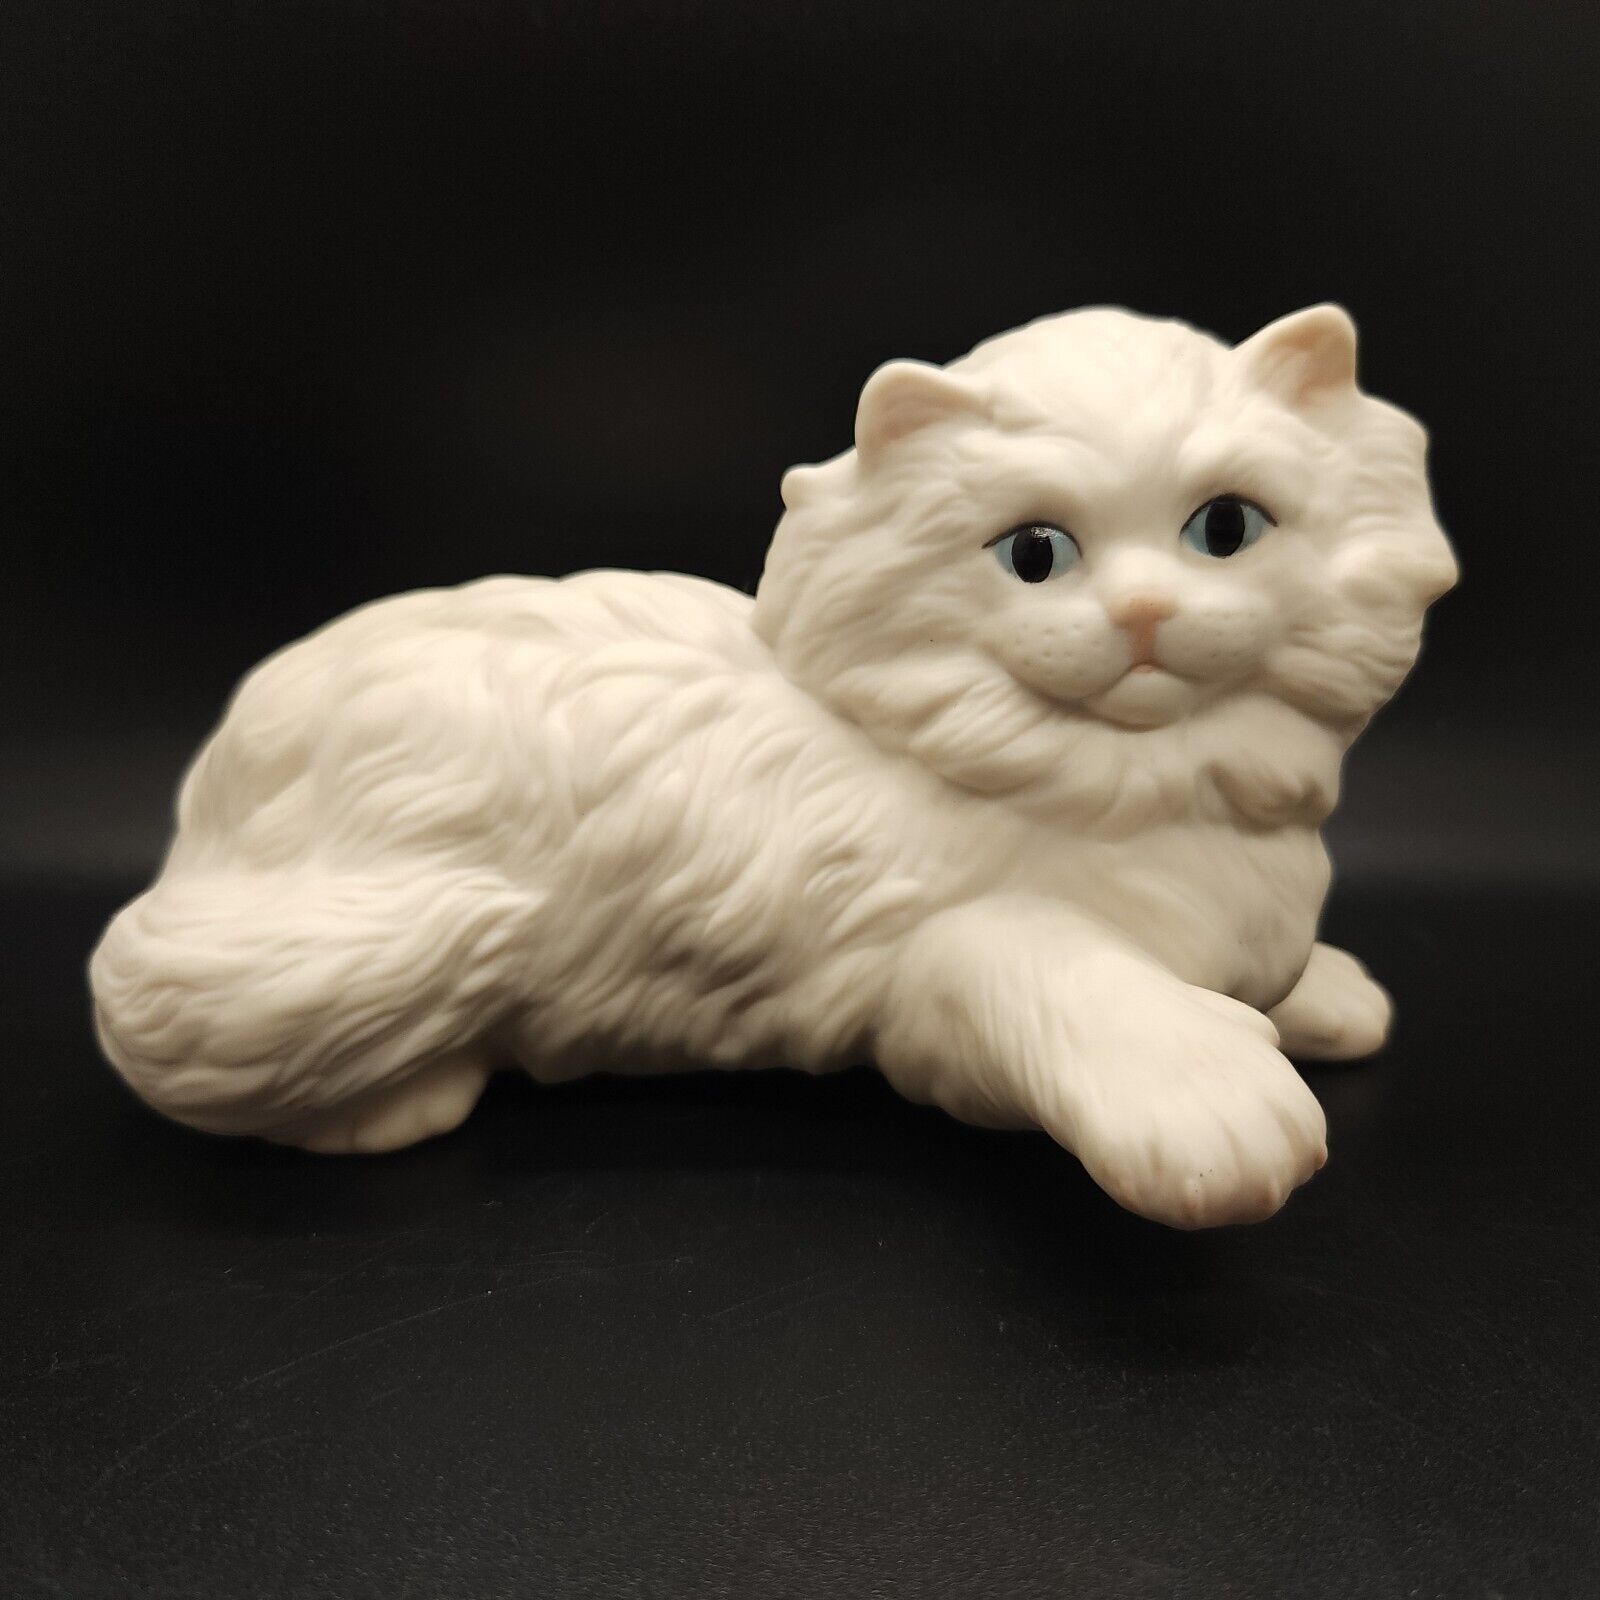 Cybis Chantilly Porcelain Persian Kitten Cat 1984 Signed Figurine